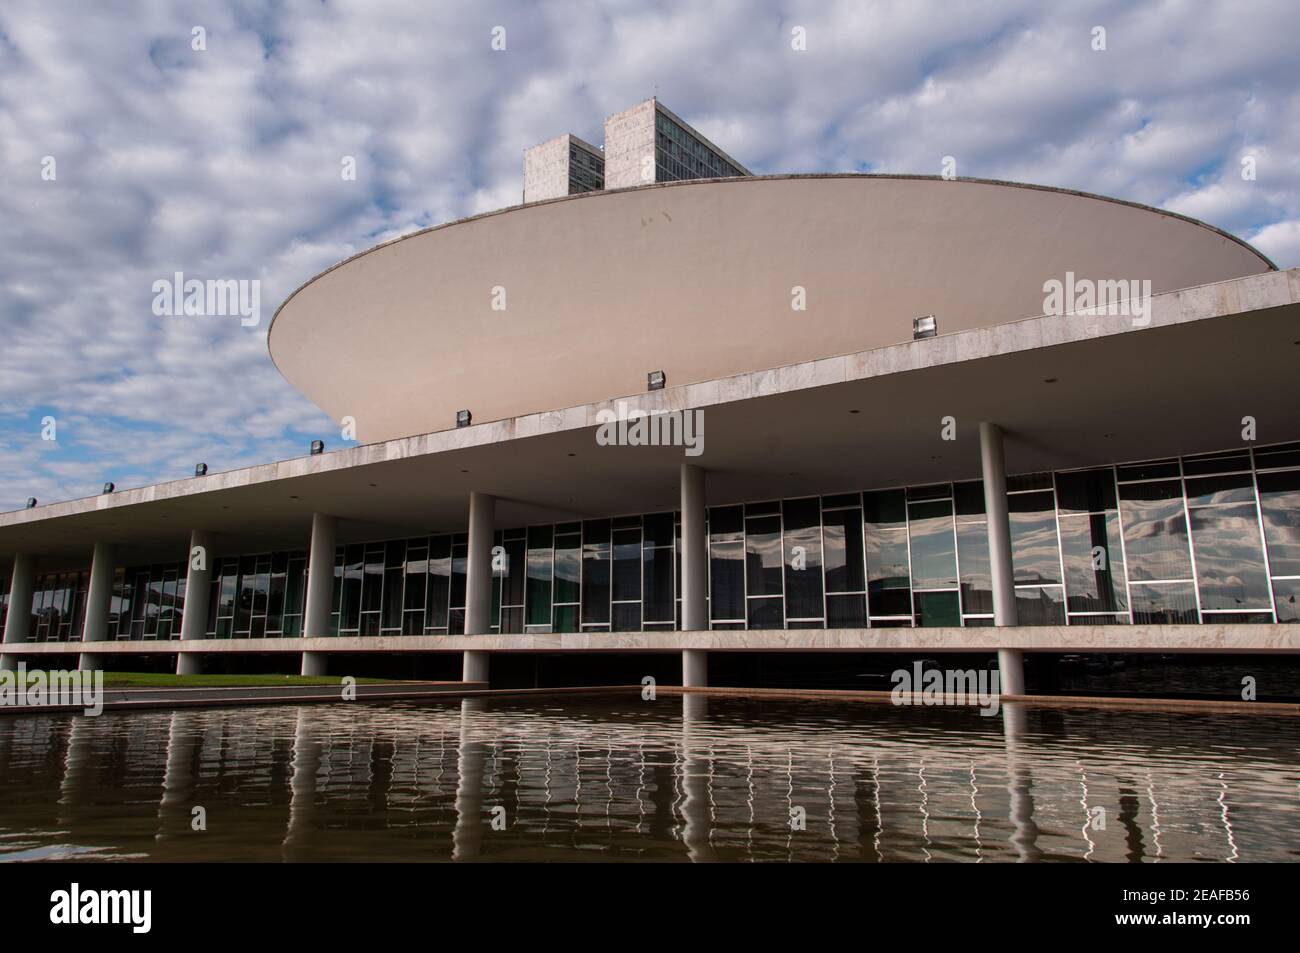 BRASILIA, BRASIL - 3 DE JUNIO de 2015: Congreso Nacional Brasileño. El edificio fue diseñado por Oscar Niemeyer en el moderno estilo brasileño. Foto de stock